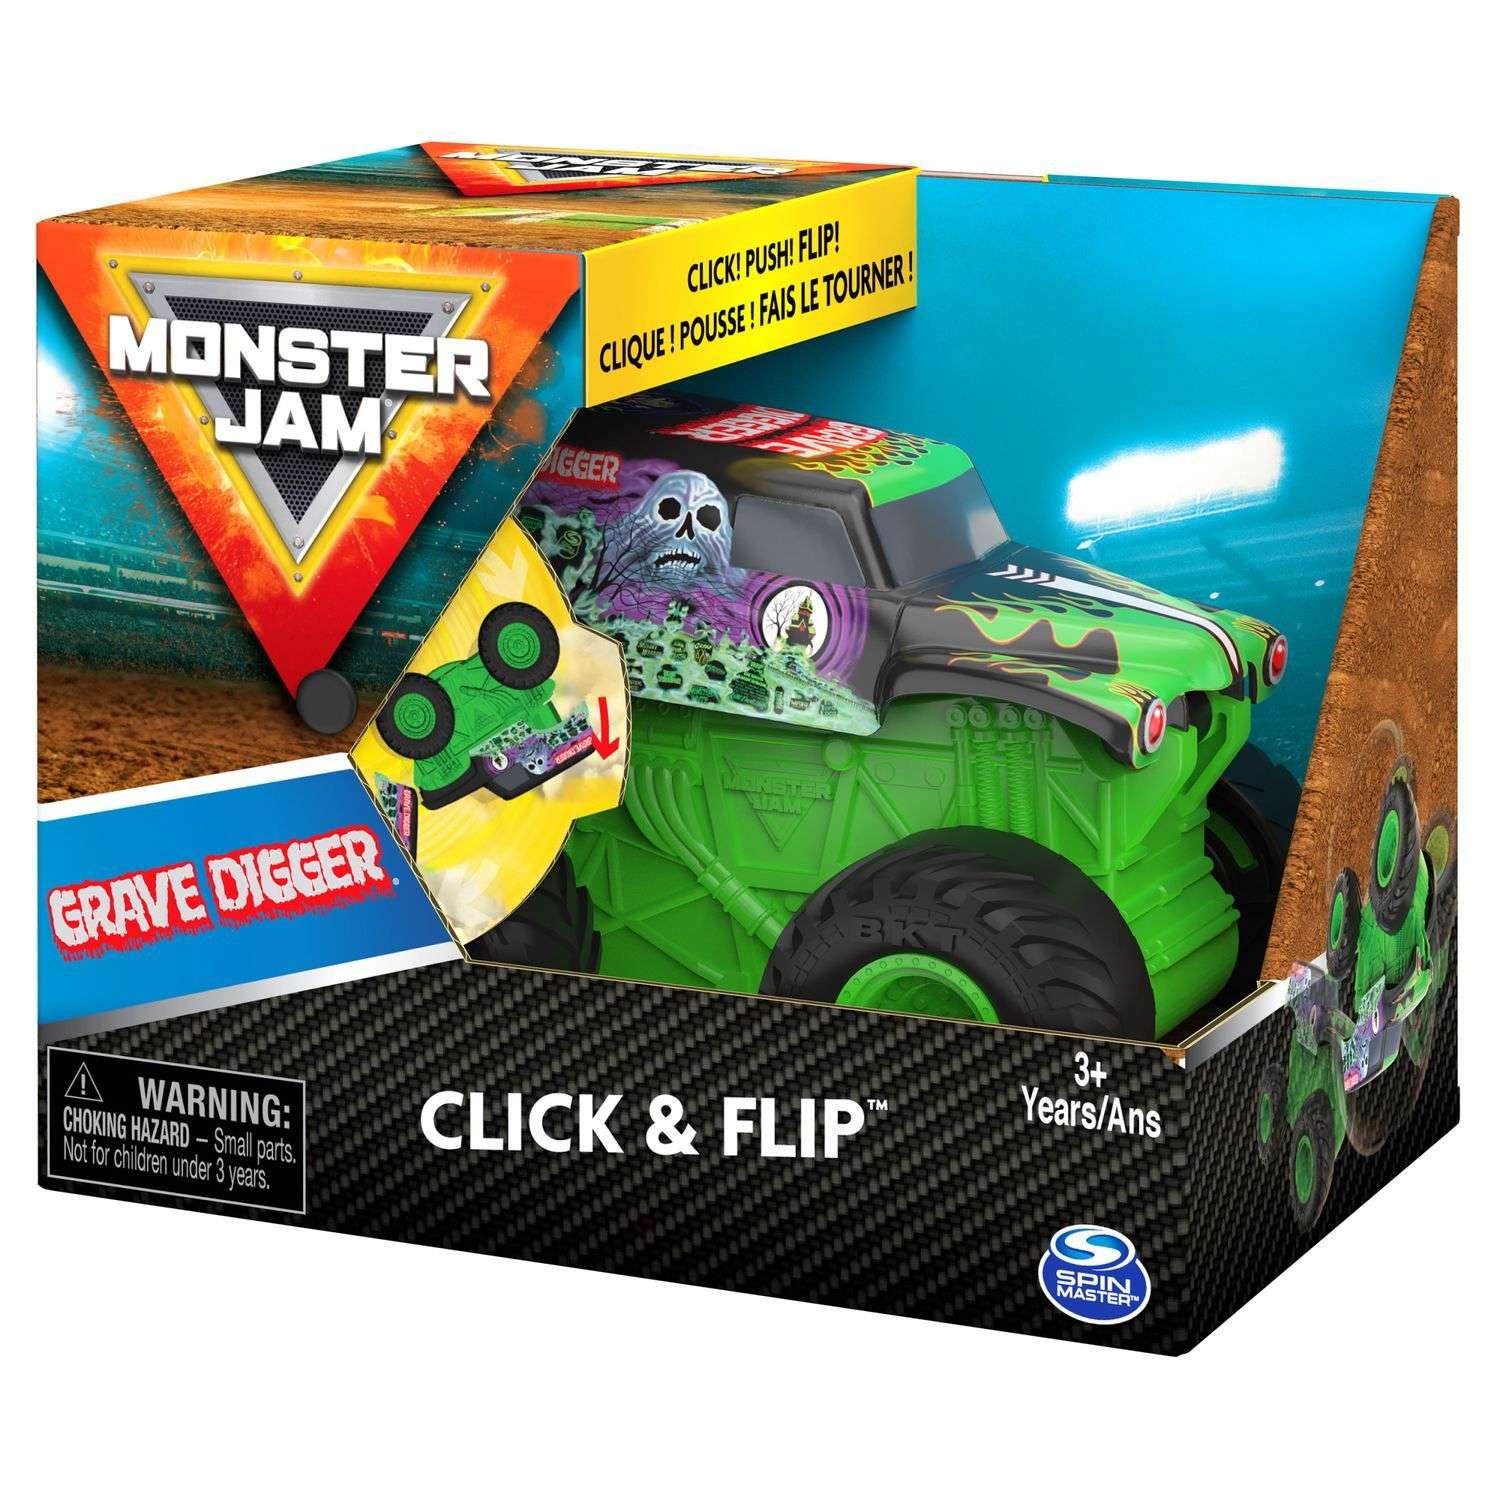 Машинка Monster Jam 1:43 Grave Digger инновационная 6061554 6061554 - фото 3